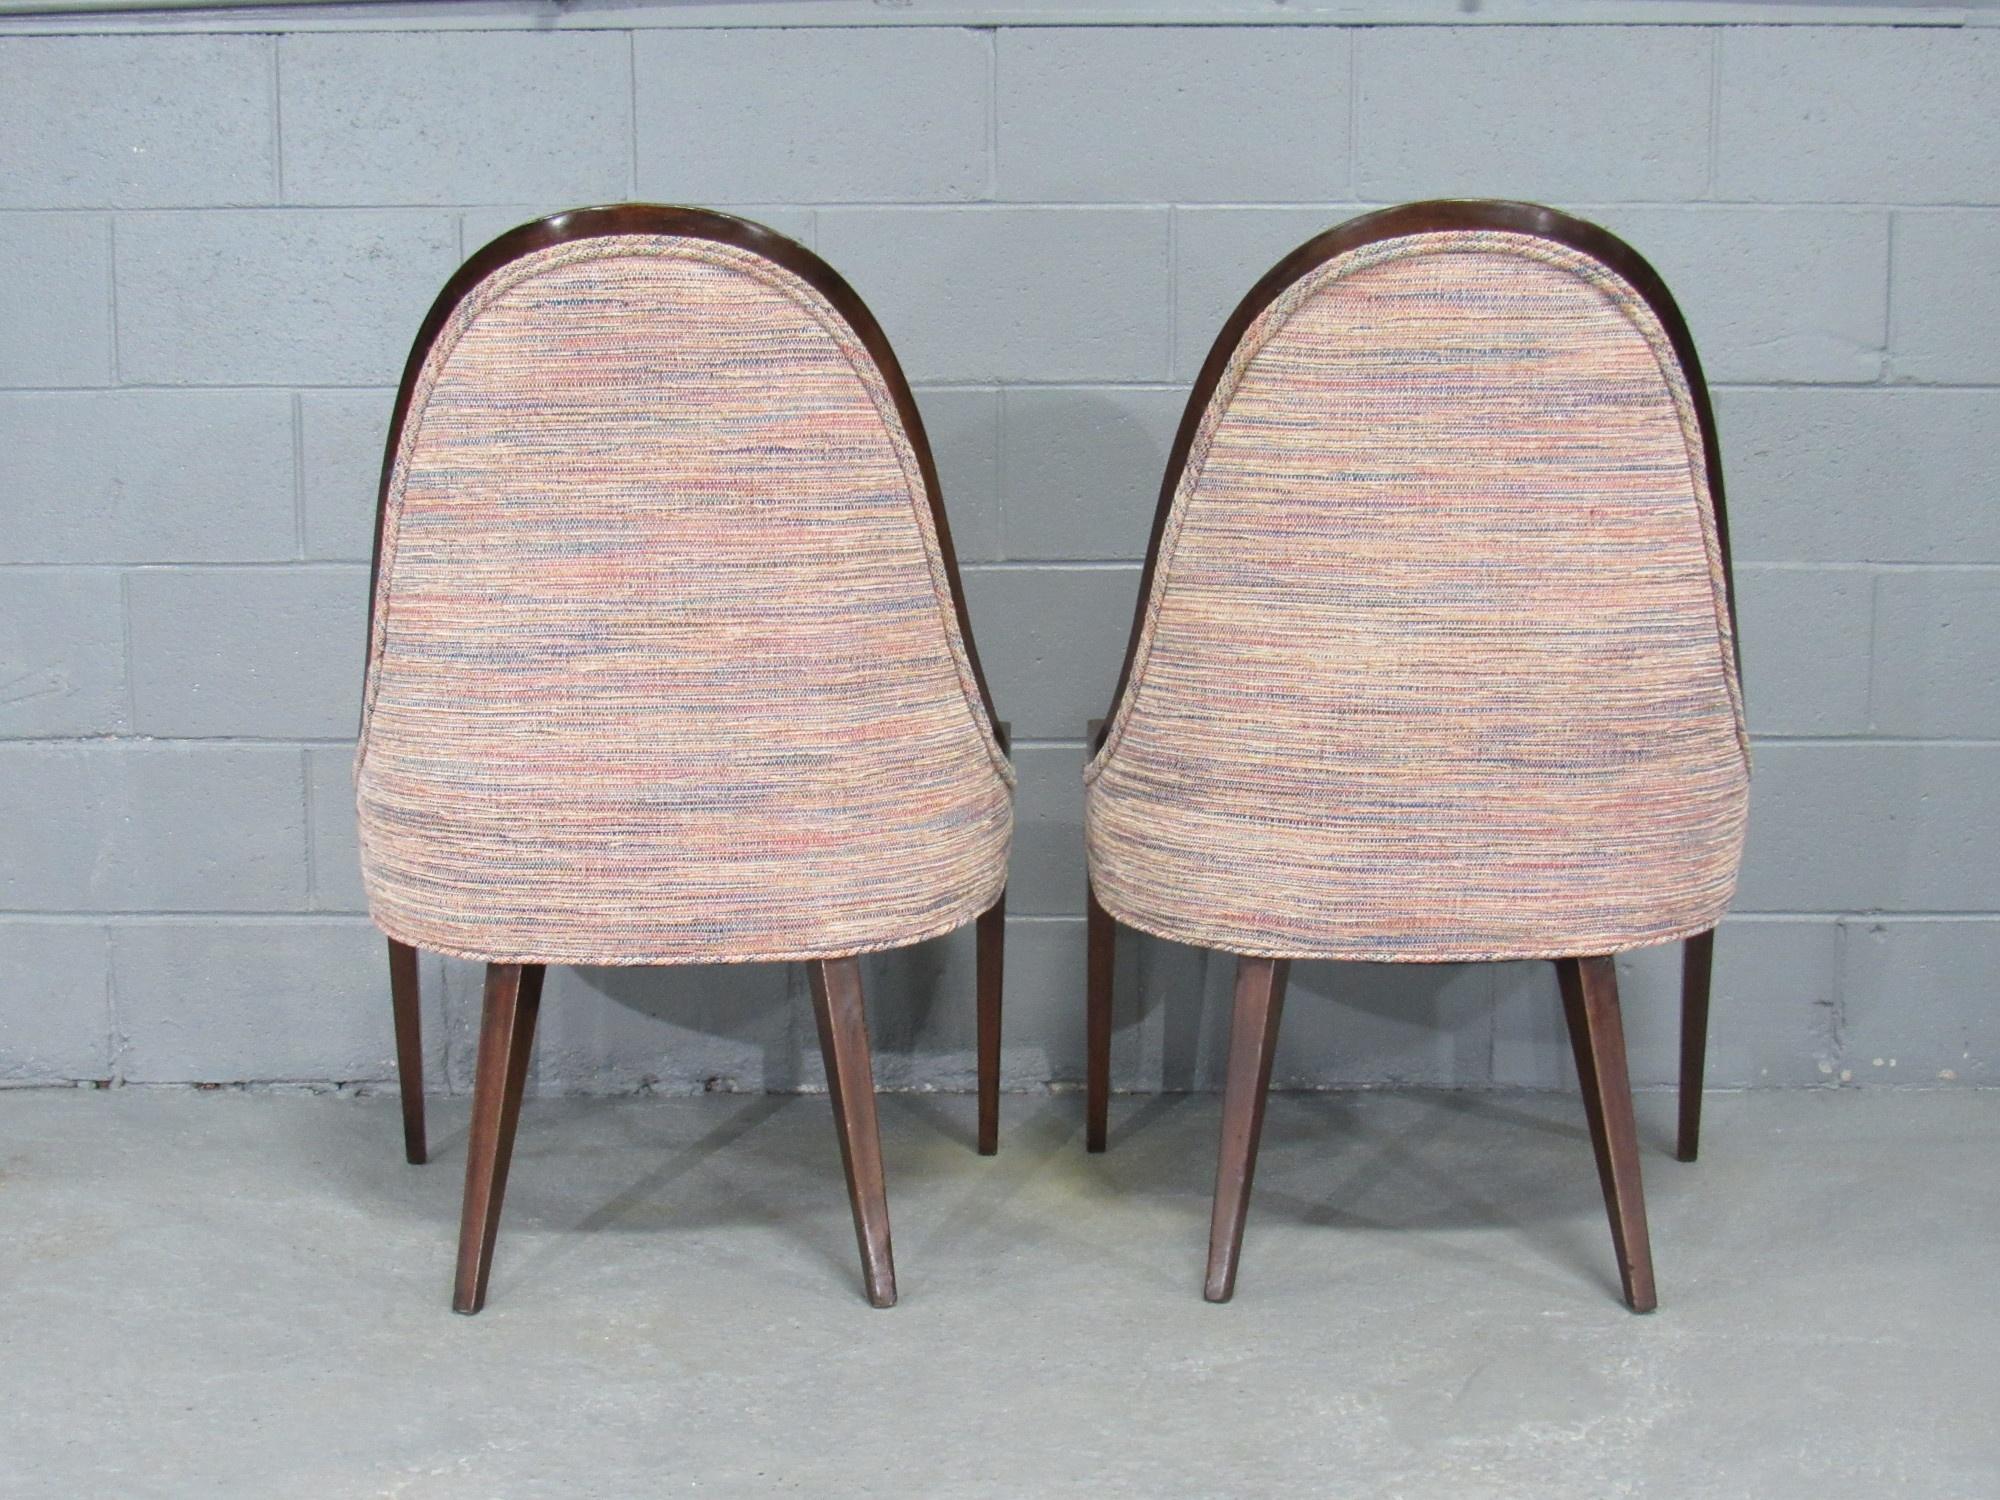 Paire de chaises gondoles des années 1950, avec une gracieuse structure en acajou et des pieds arrière évasés, conçues par Harvey Probber, Américain. Les chaises ont un cadre robuste en acajou et sont revêtues d'un tissu de haute qualité.